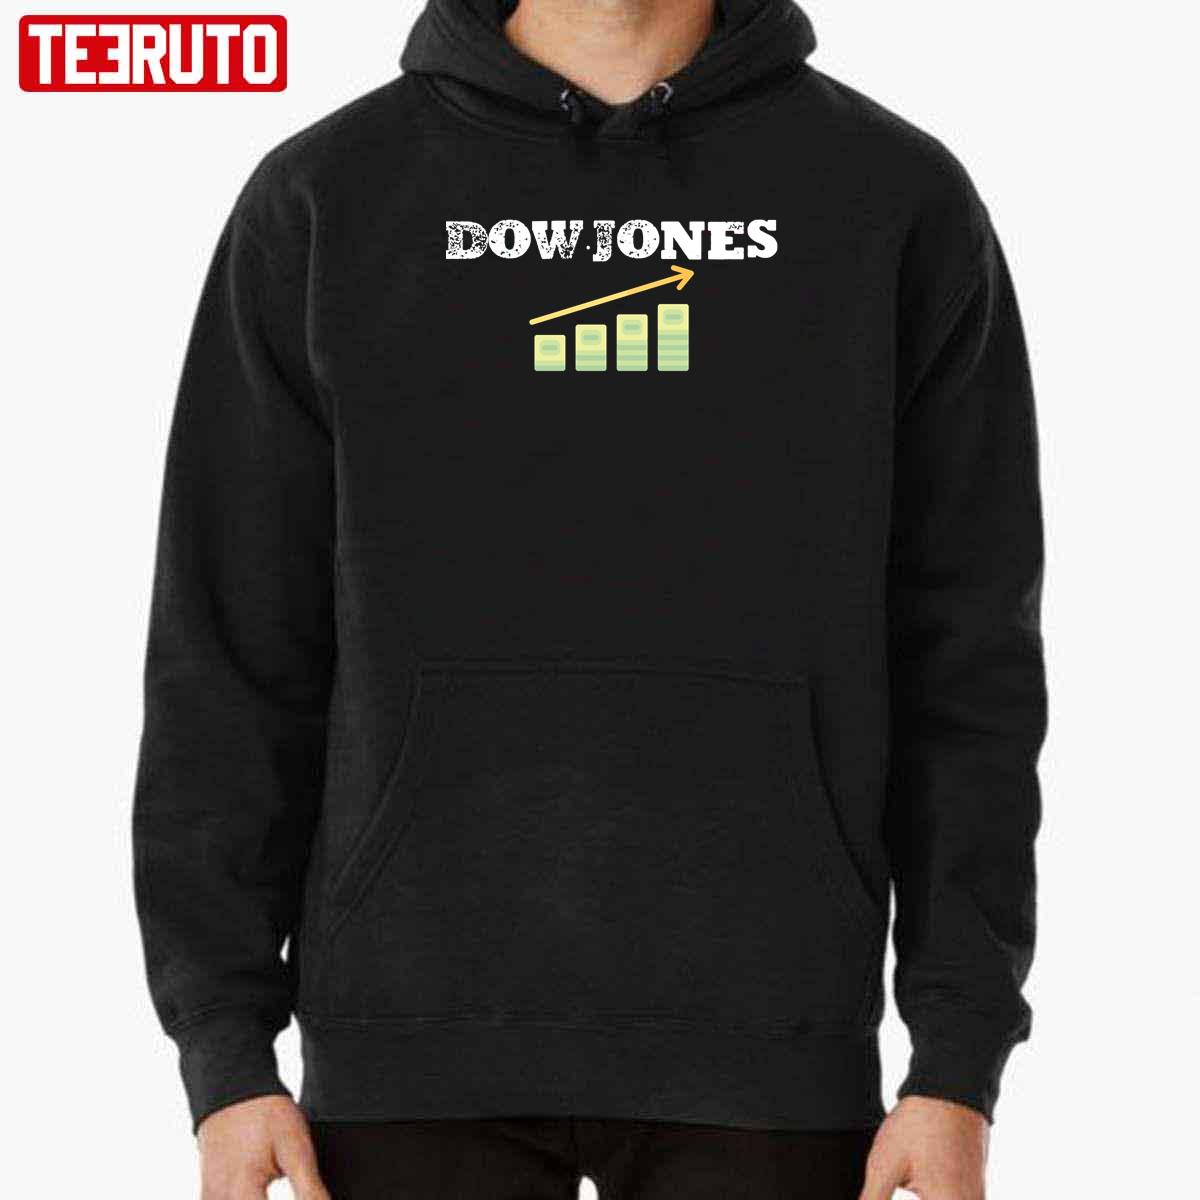 Dow Jones Unisex Sweatshirt